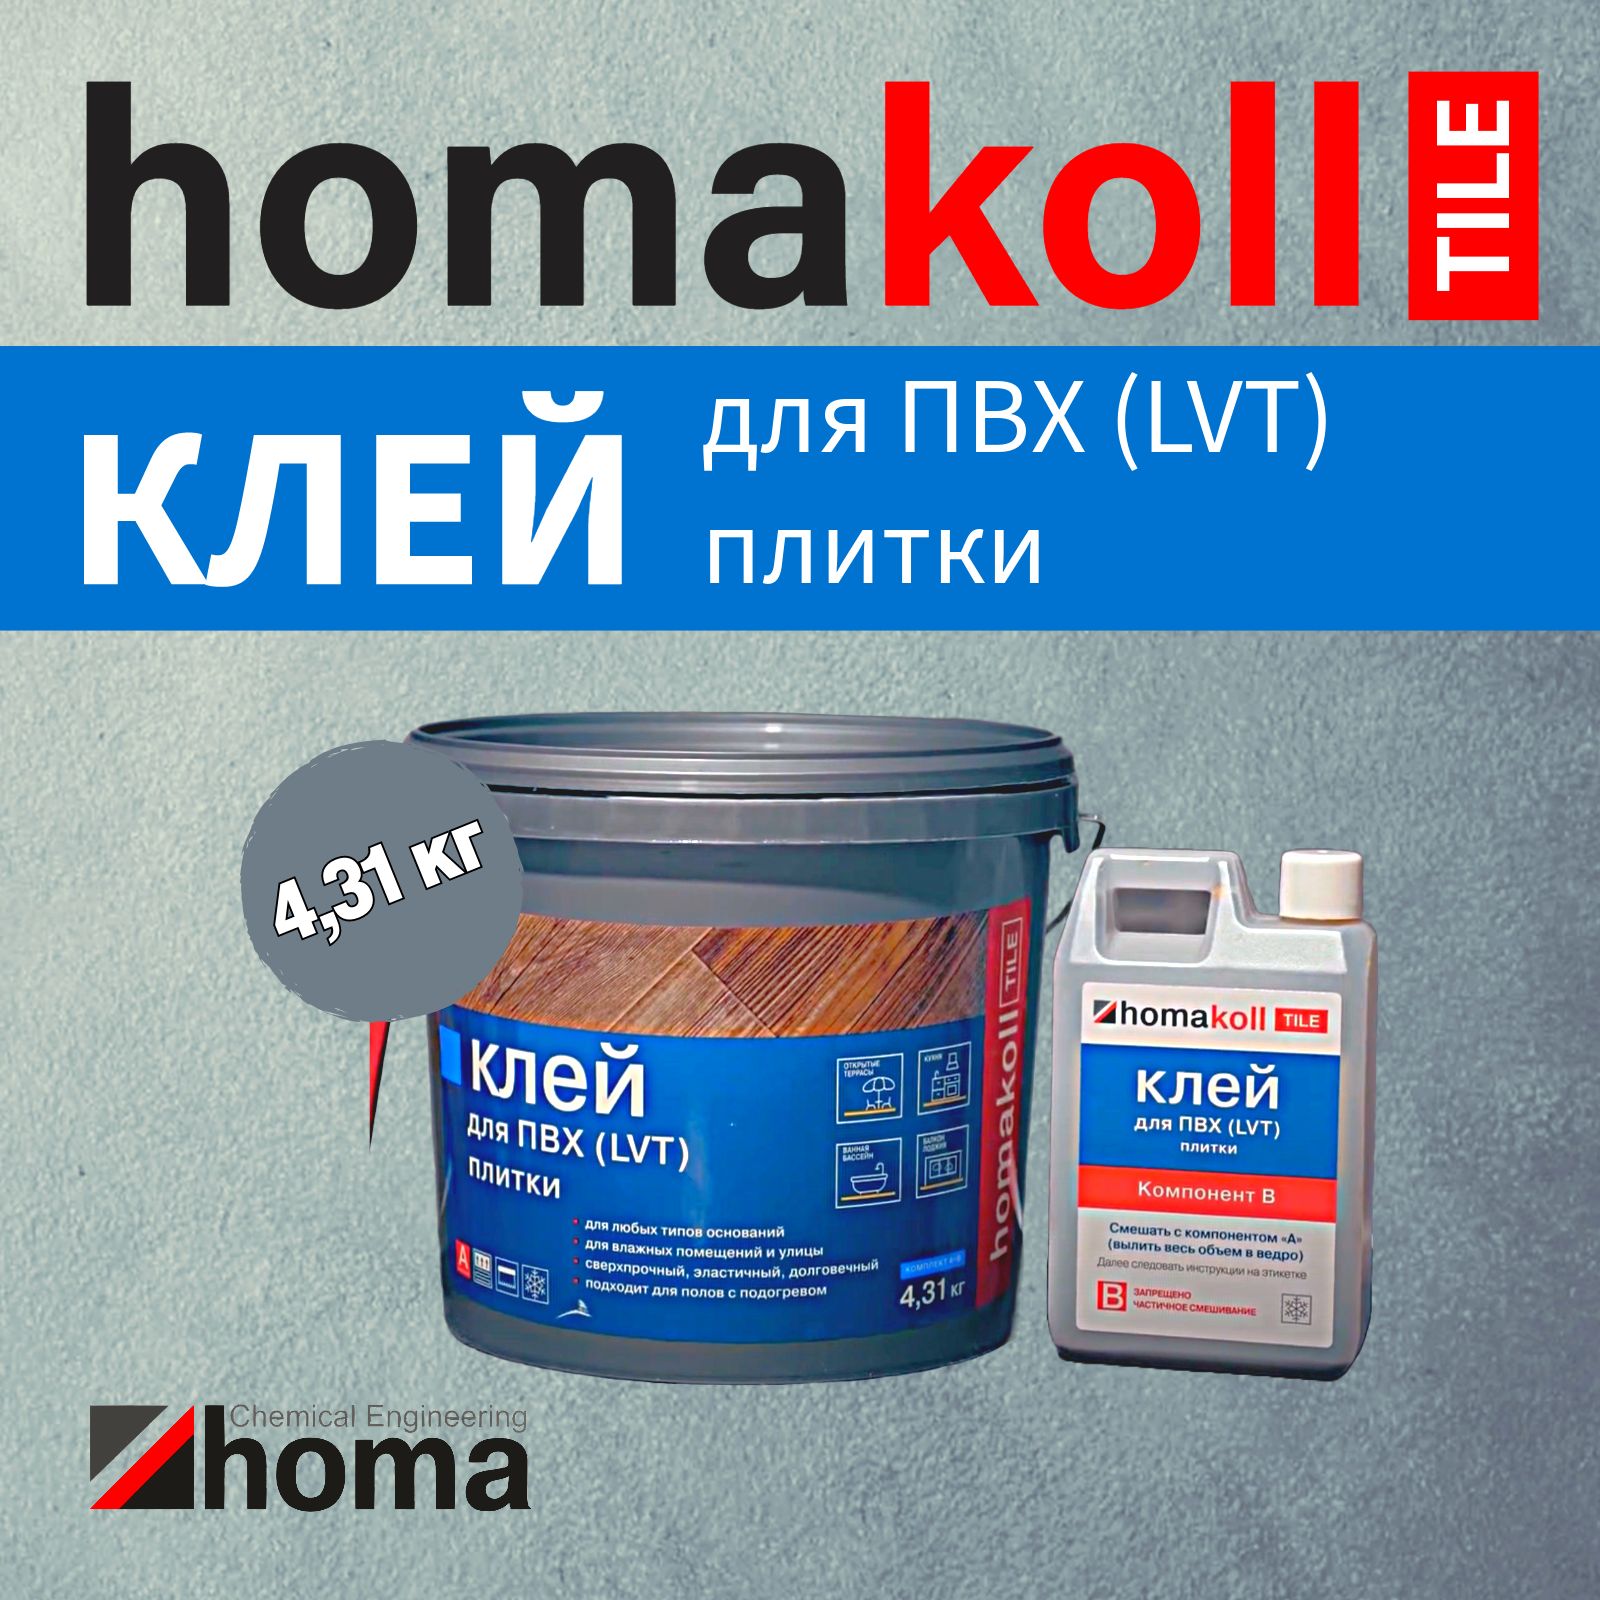 Клей homakoll TILE для напольных модульных ПВХ-покрытий, 4,31 кг